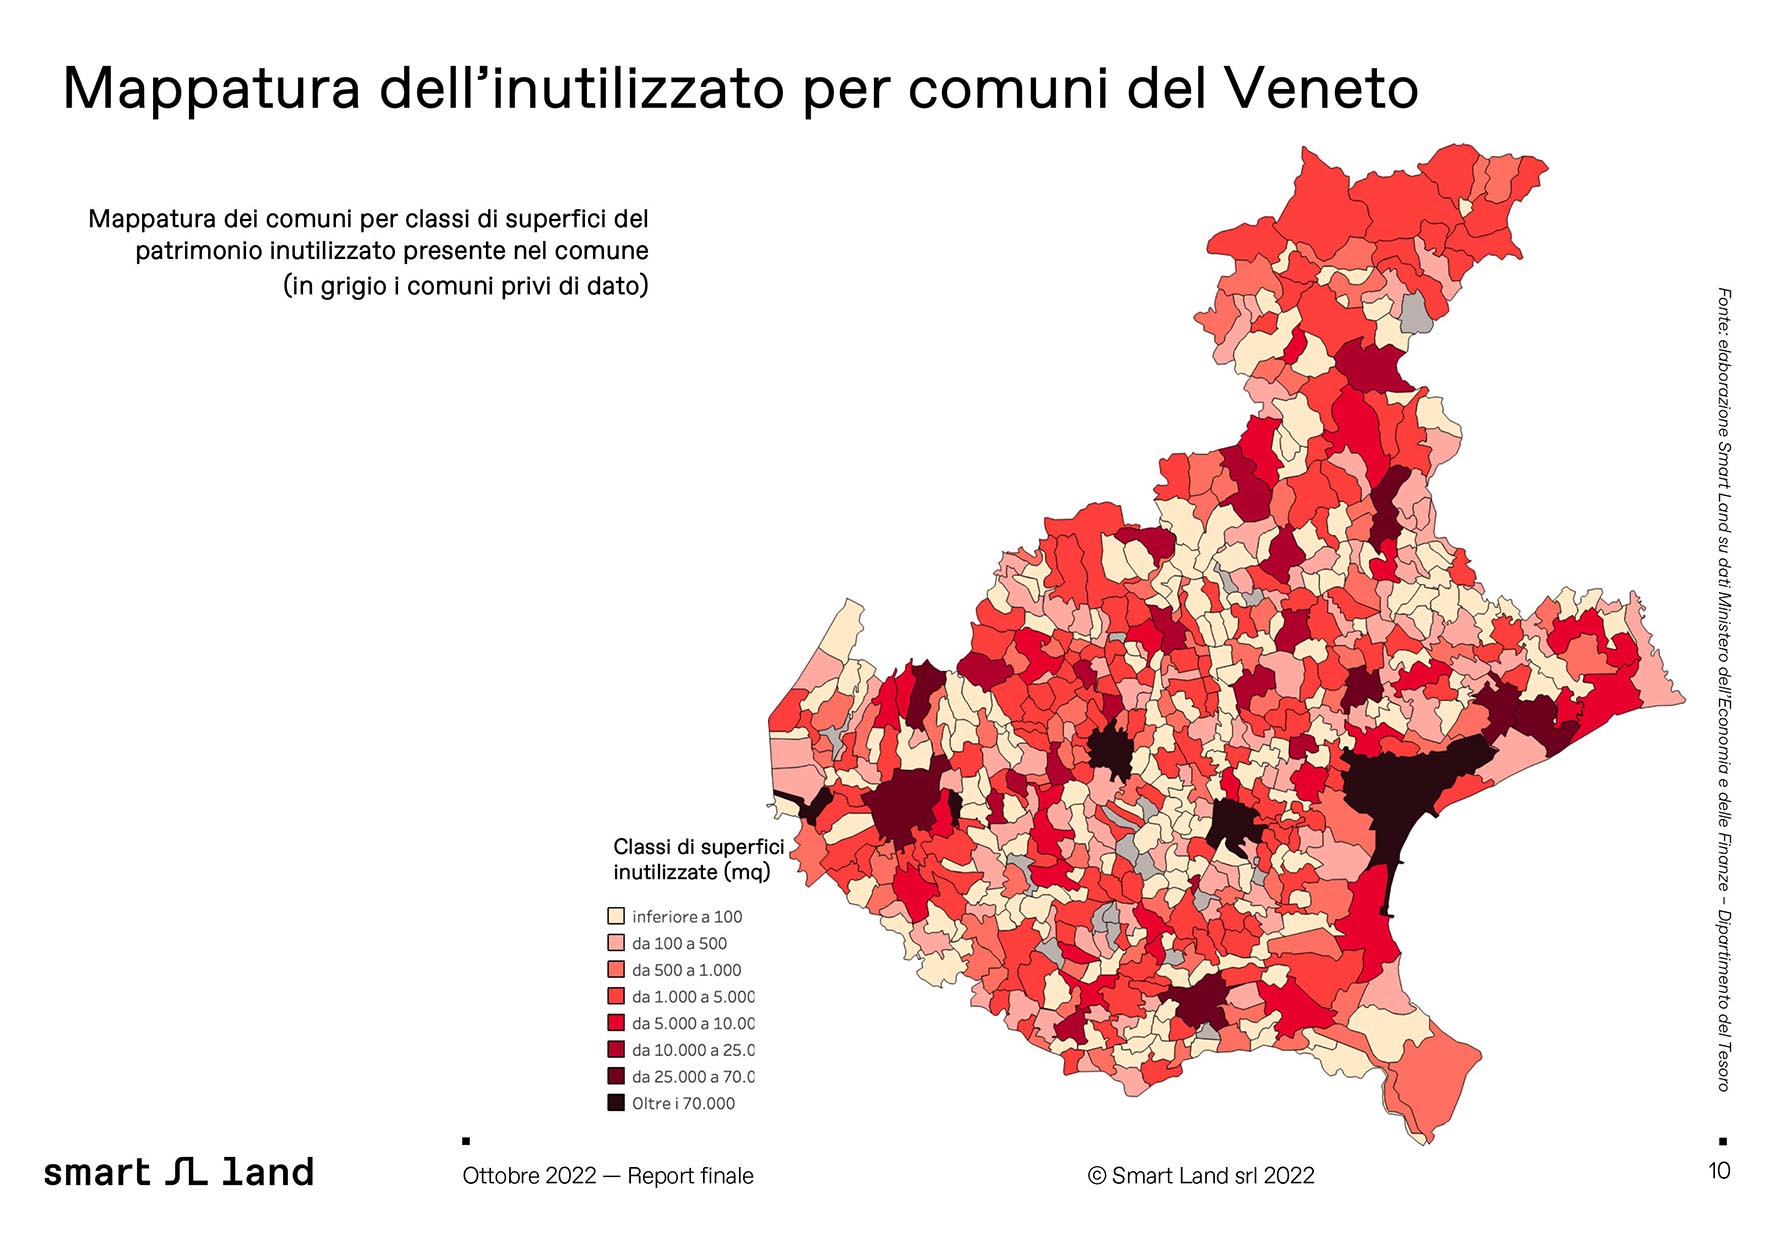 Immobili pubblici del Veneto